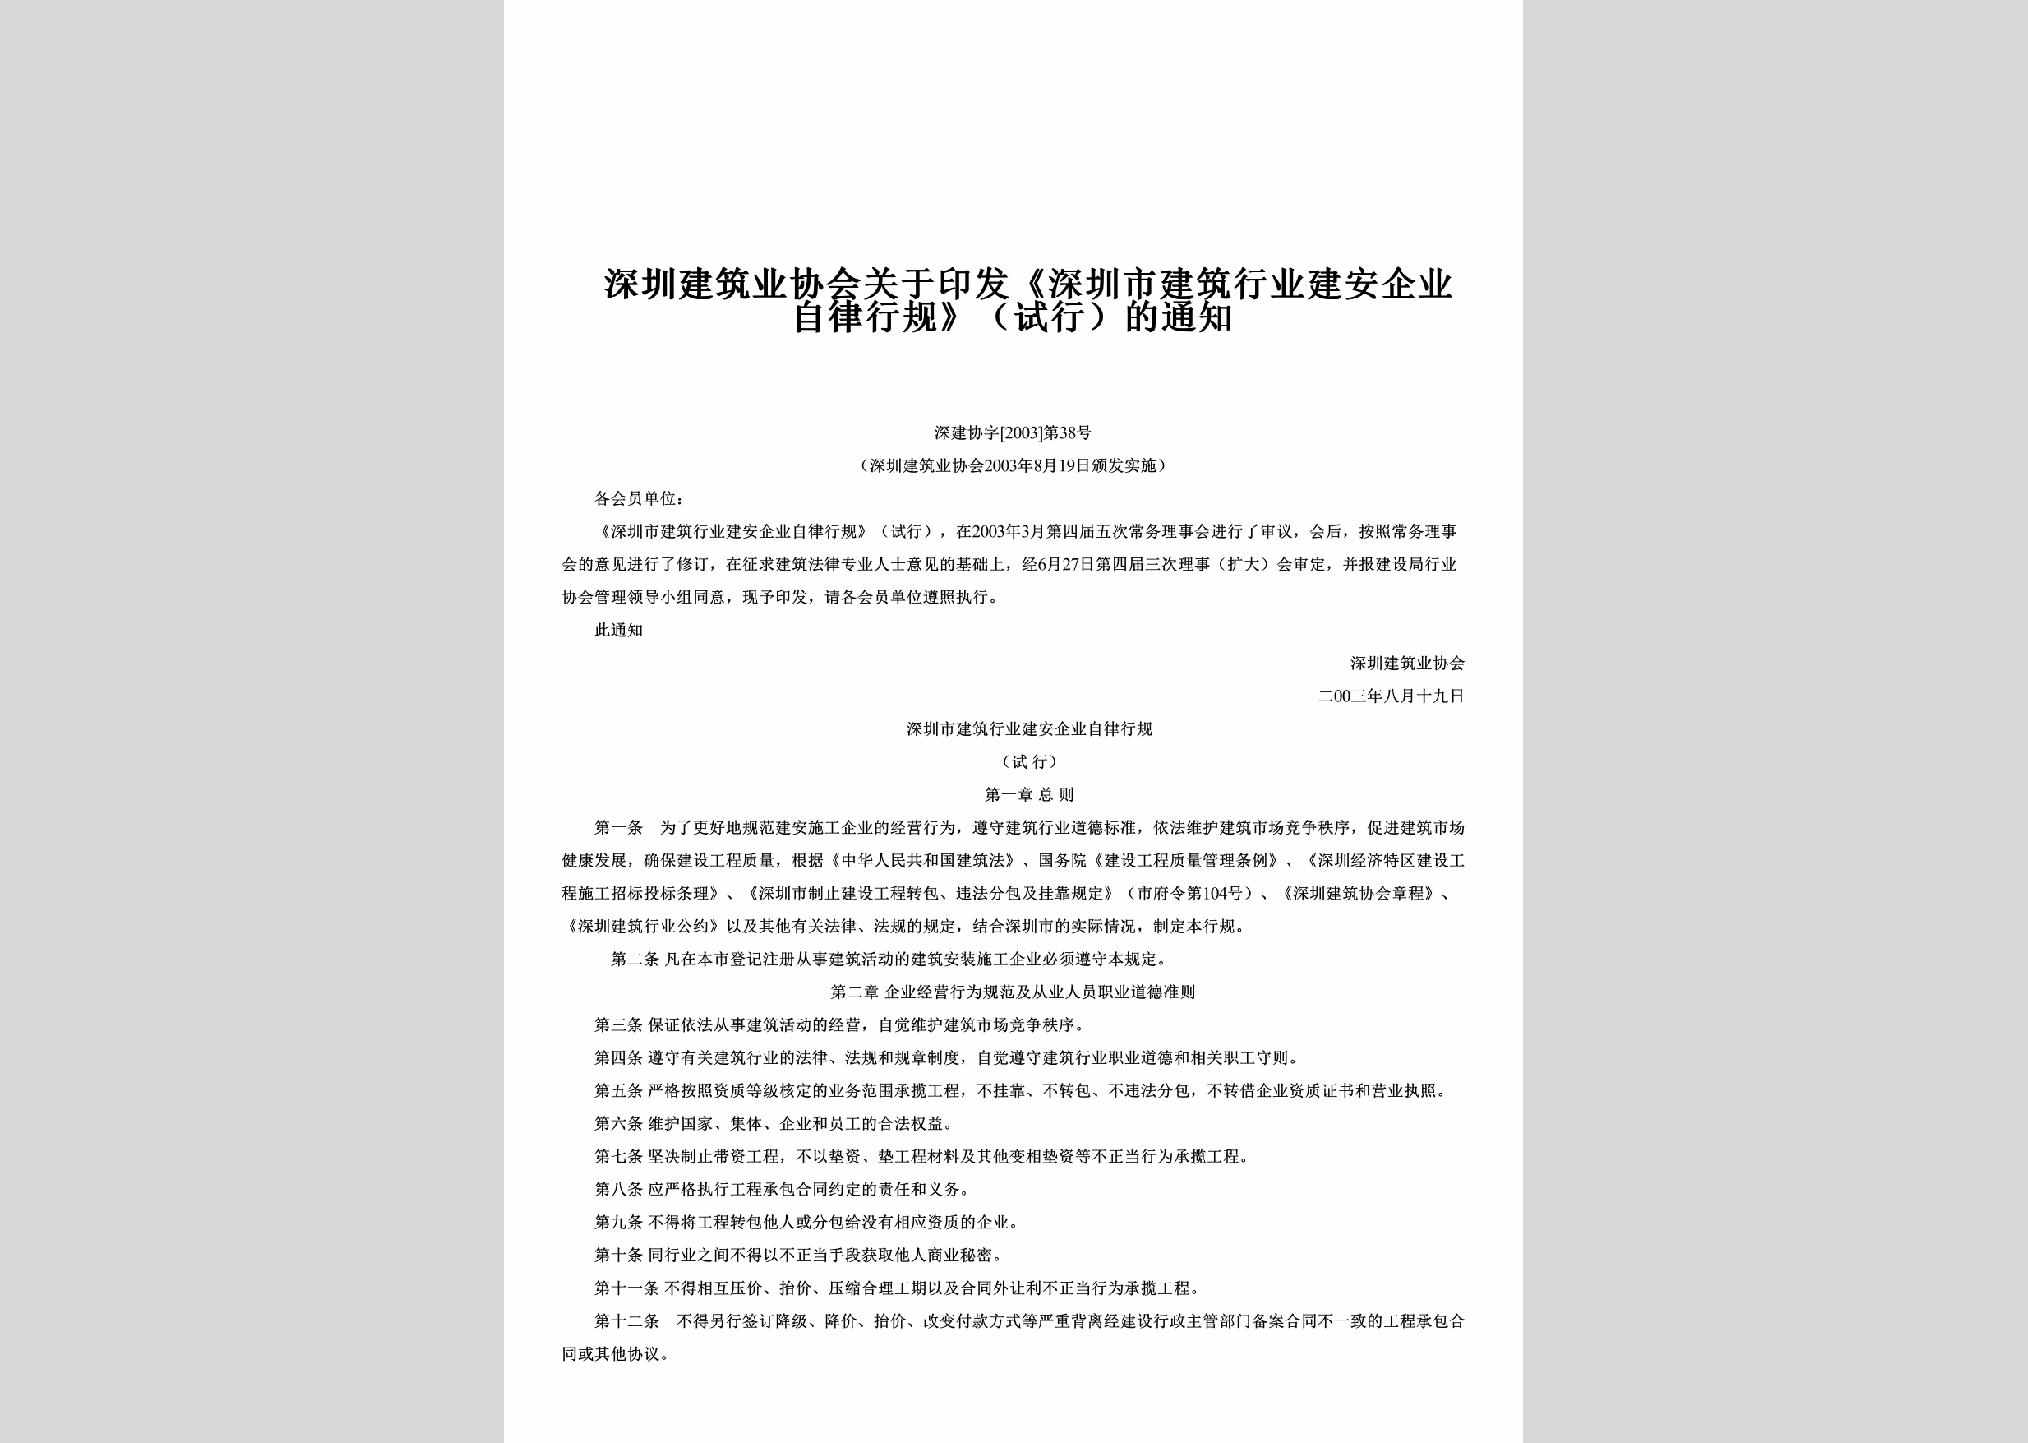 深建协字[2003]第38号：关于印发《深圳市建筑行业建安企业自律行规》（试行）的通知